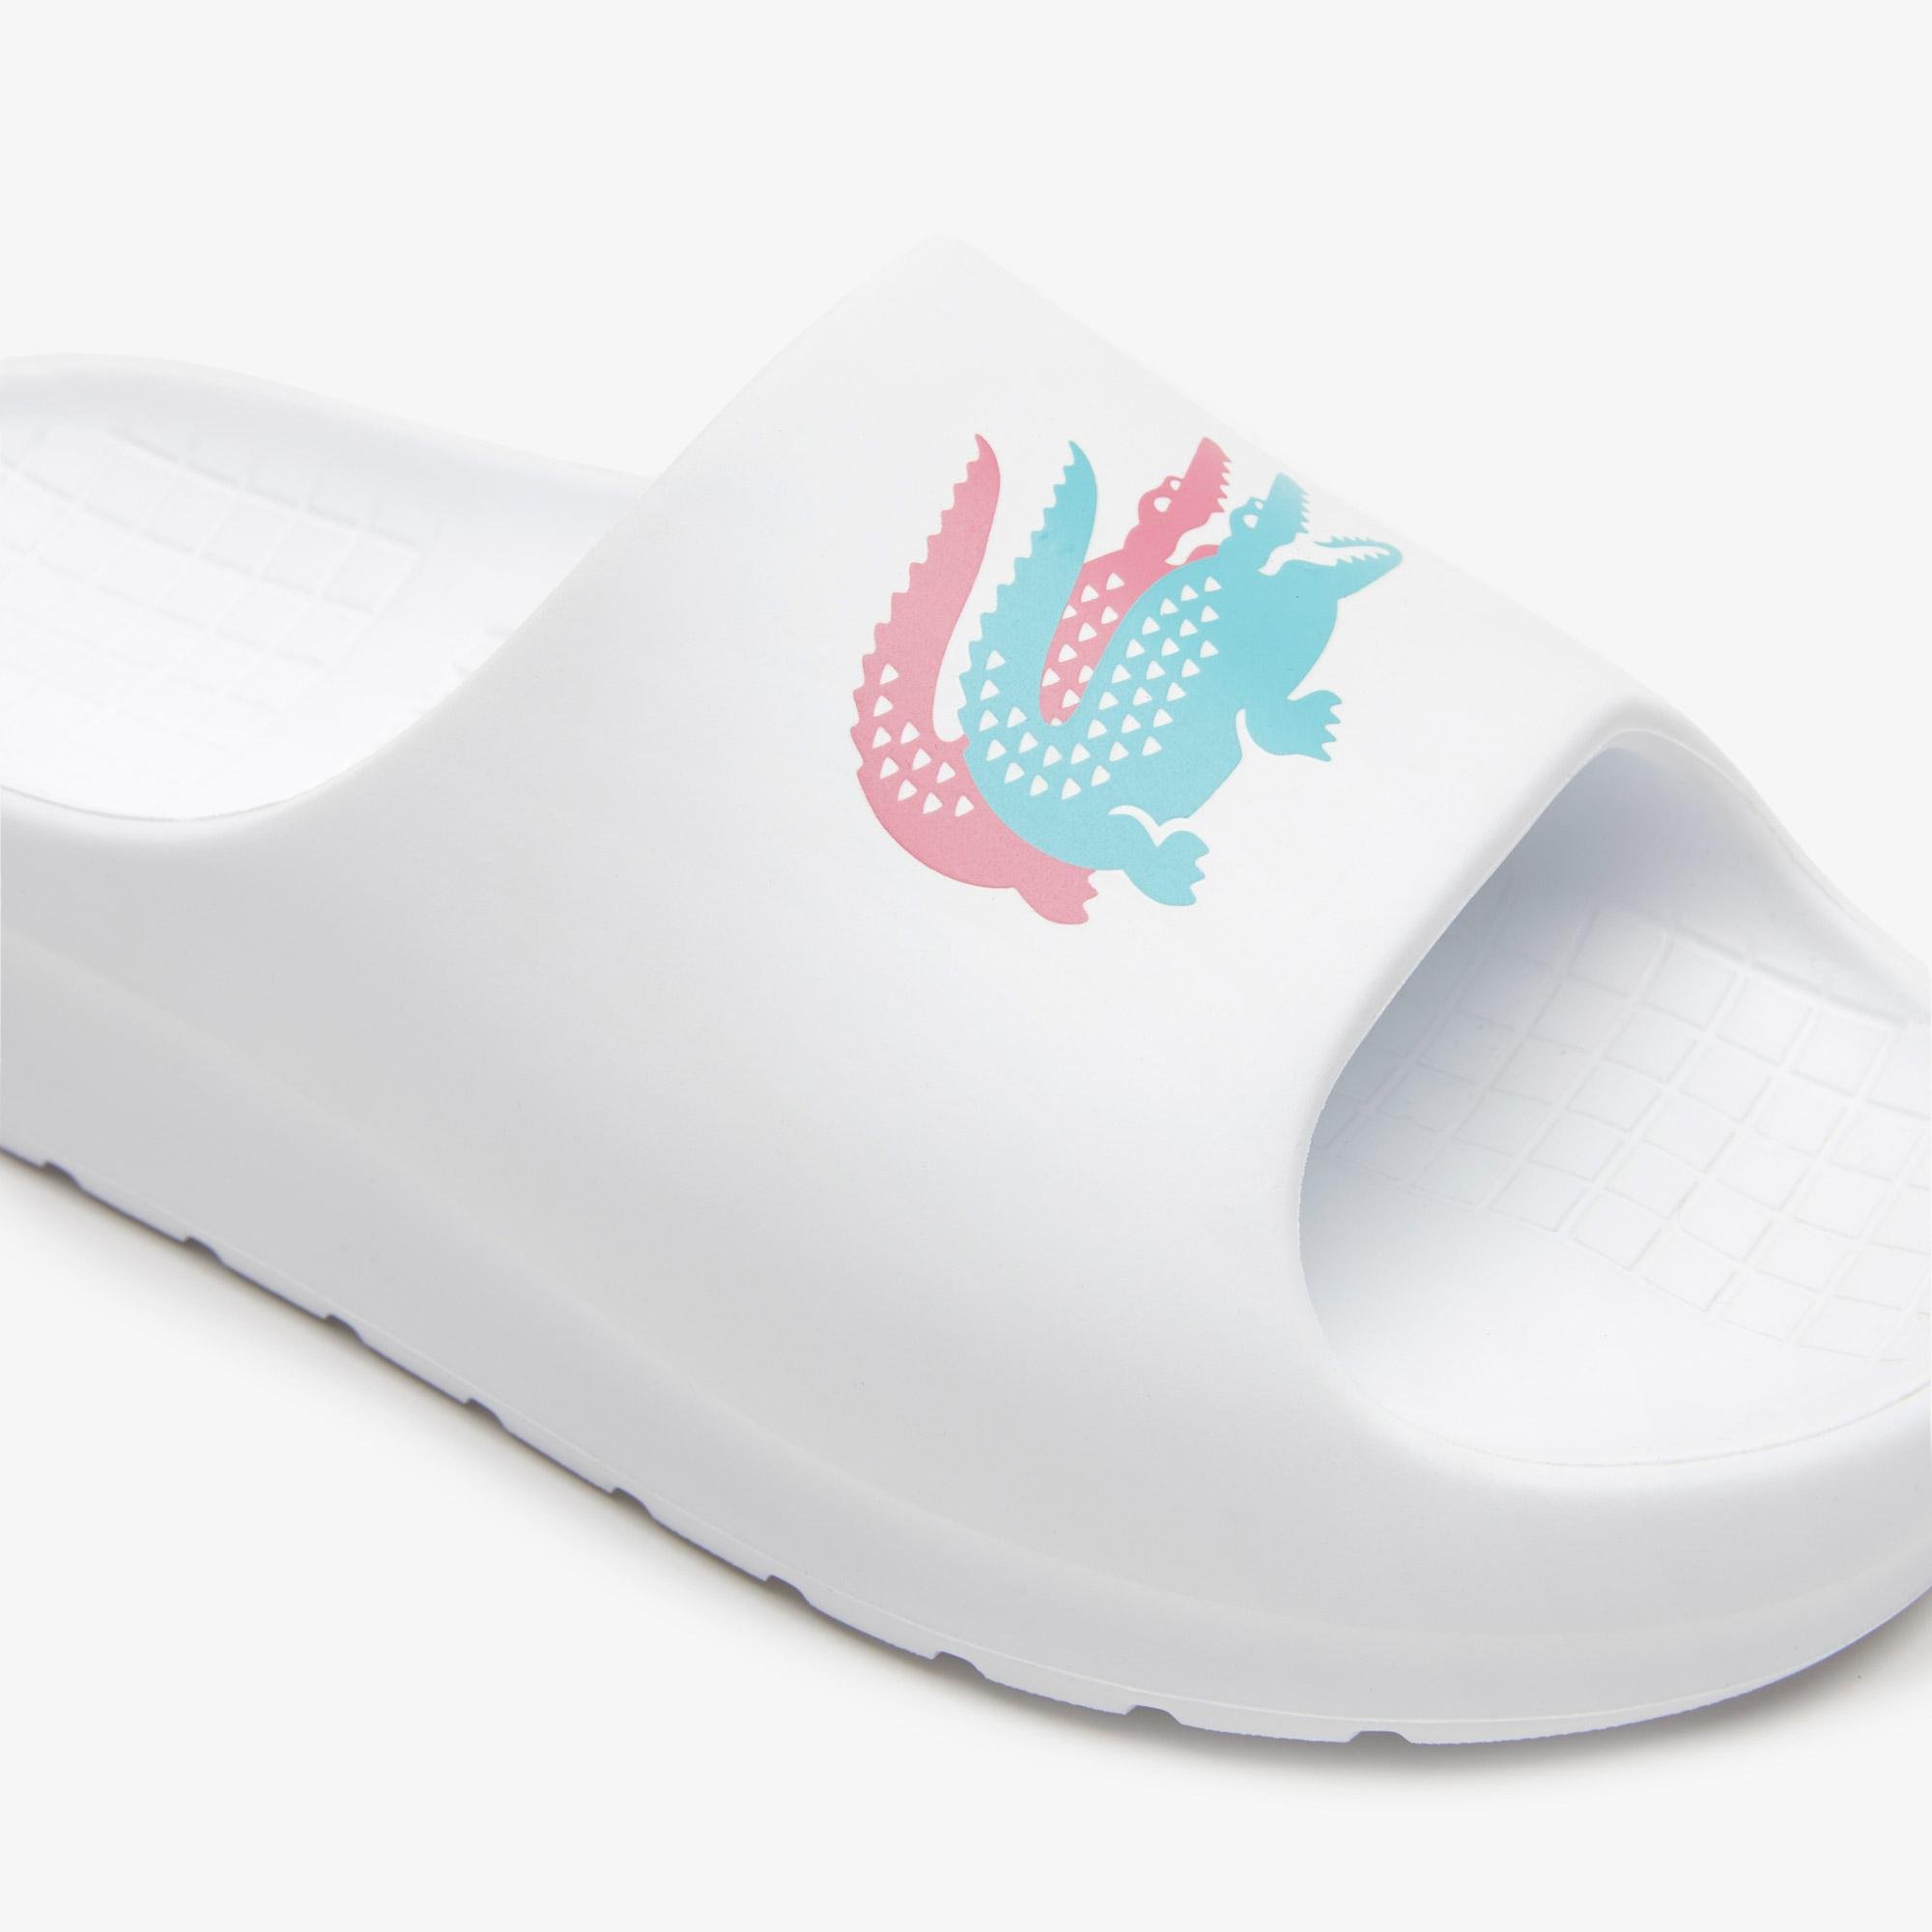 
Dámske biele papuče Lacoste Serve Slide 2.0